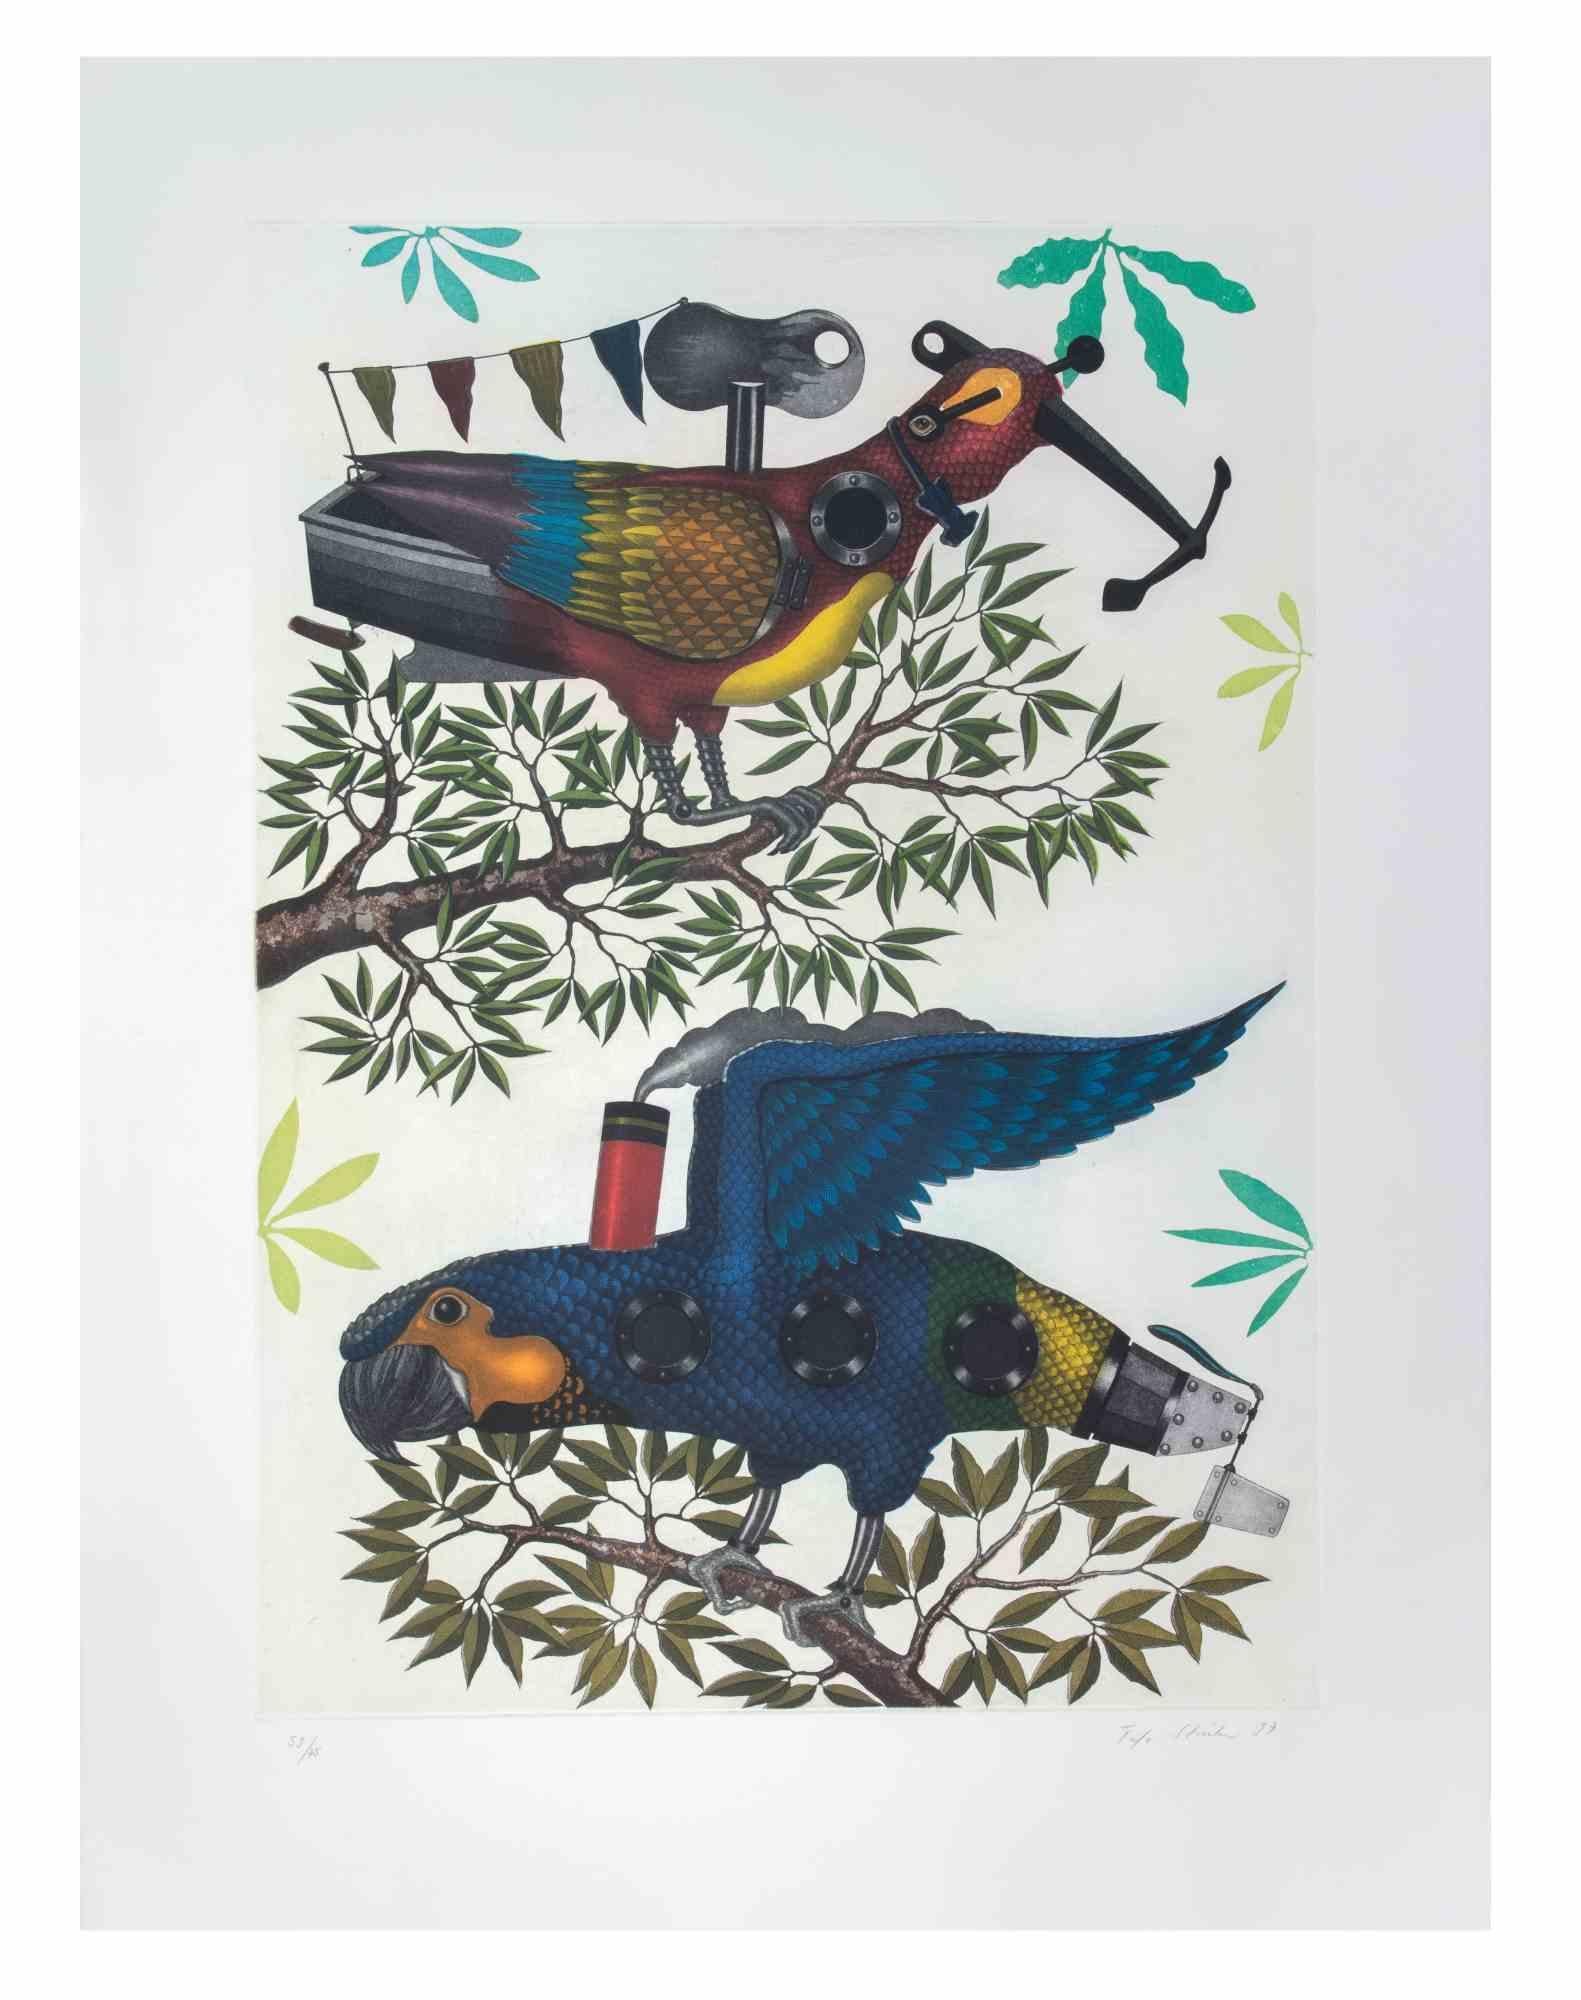 Parrots ist ein zeitgenössisches Kunstwerk des Künstlers Fifo Stricker aus dem Jahr 1997.

Gemischte farbige Aquatinta und Radierung. 

Vom Künstler am rechten unteren Rand handsigniert und datiert.

Am linken unteren Rand nummeriert. Auflage von